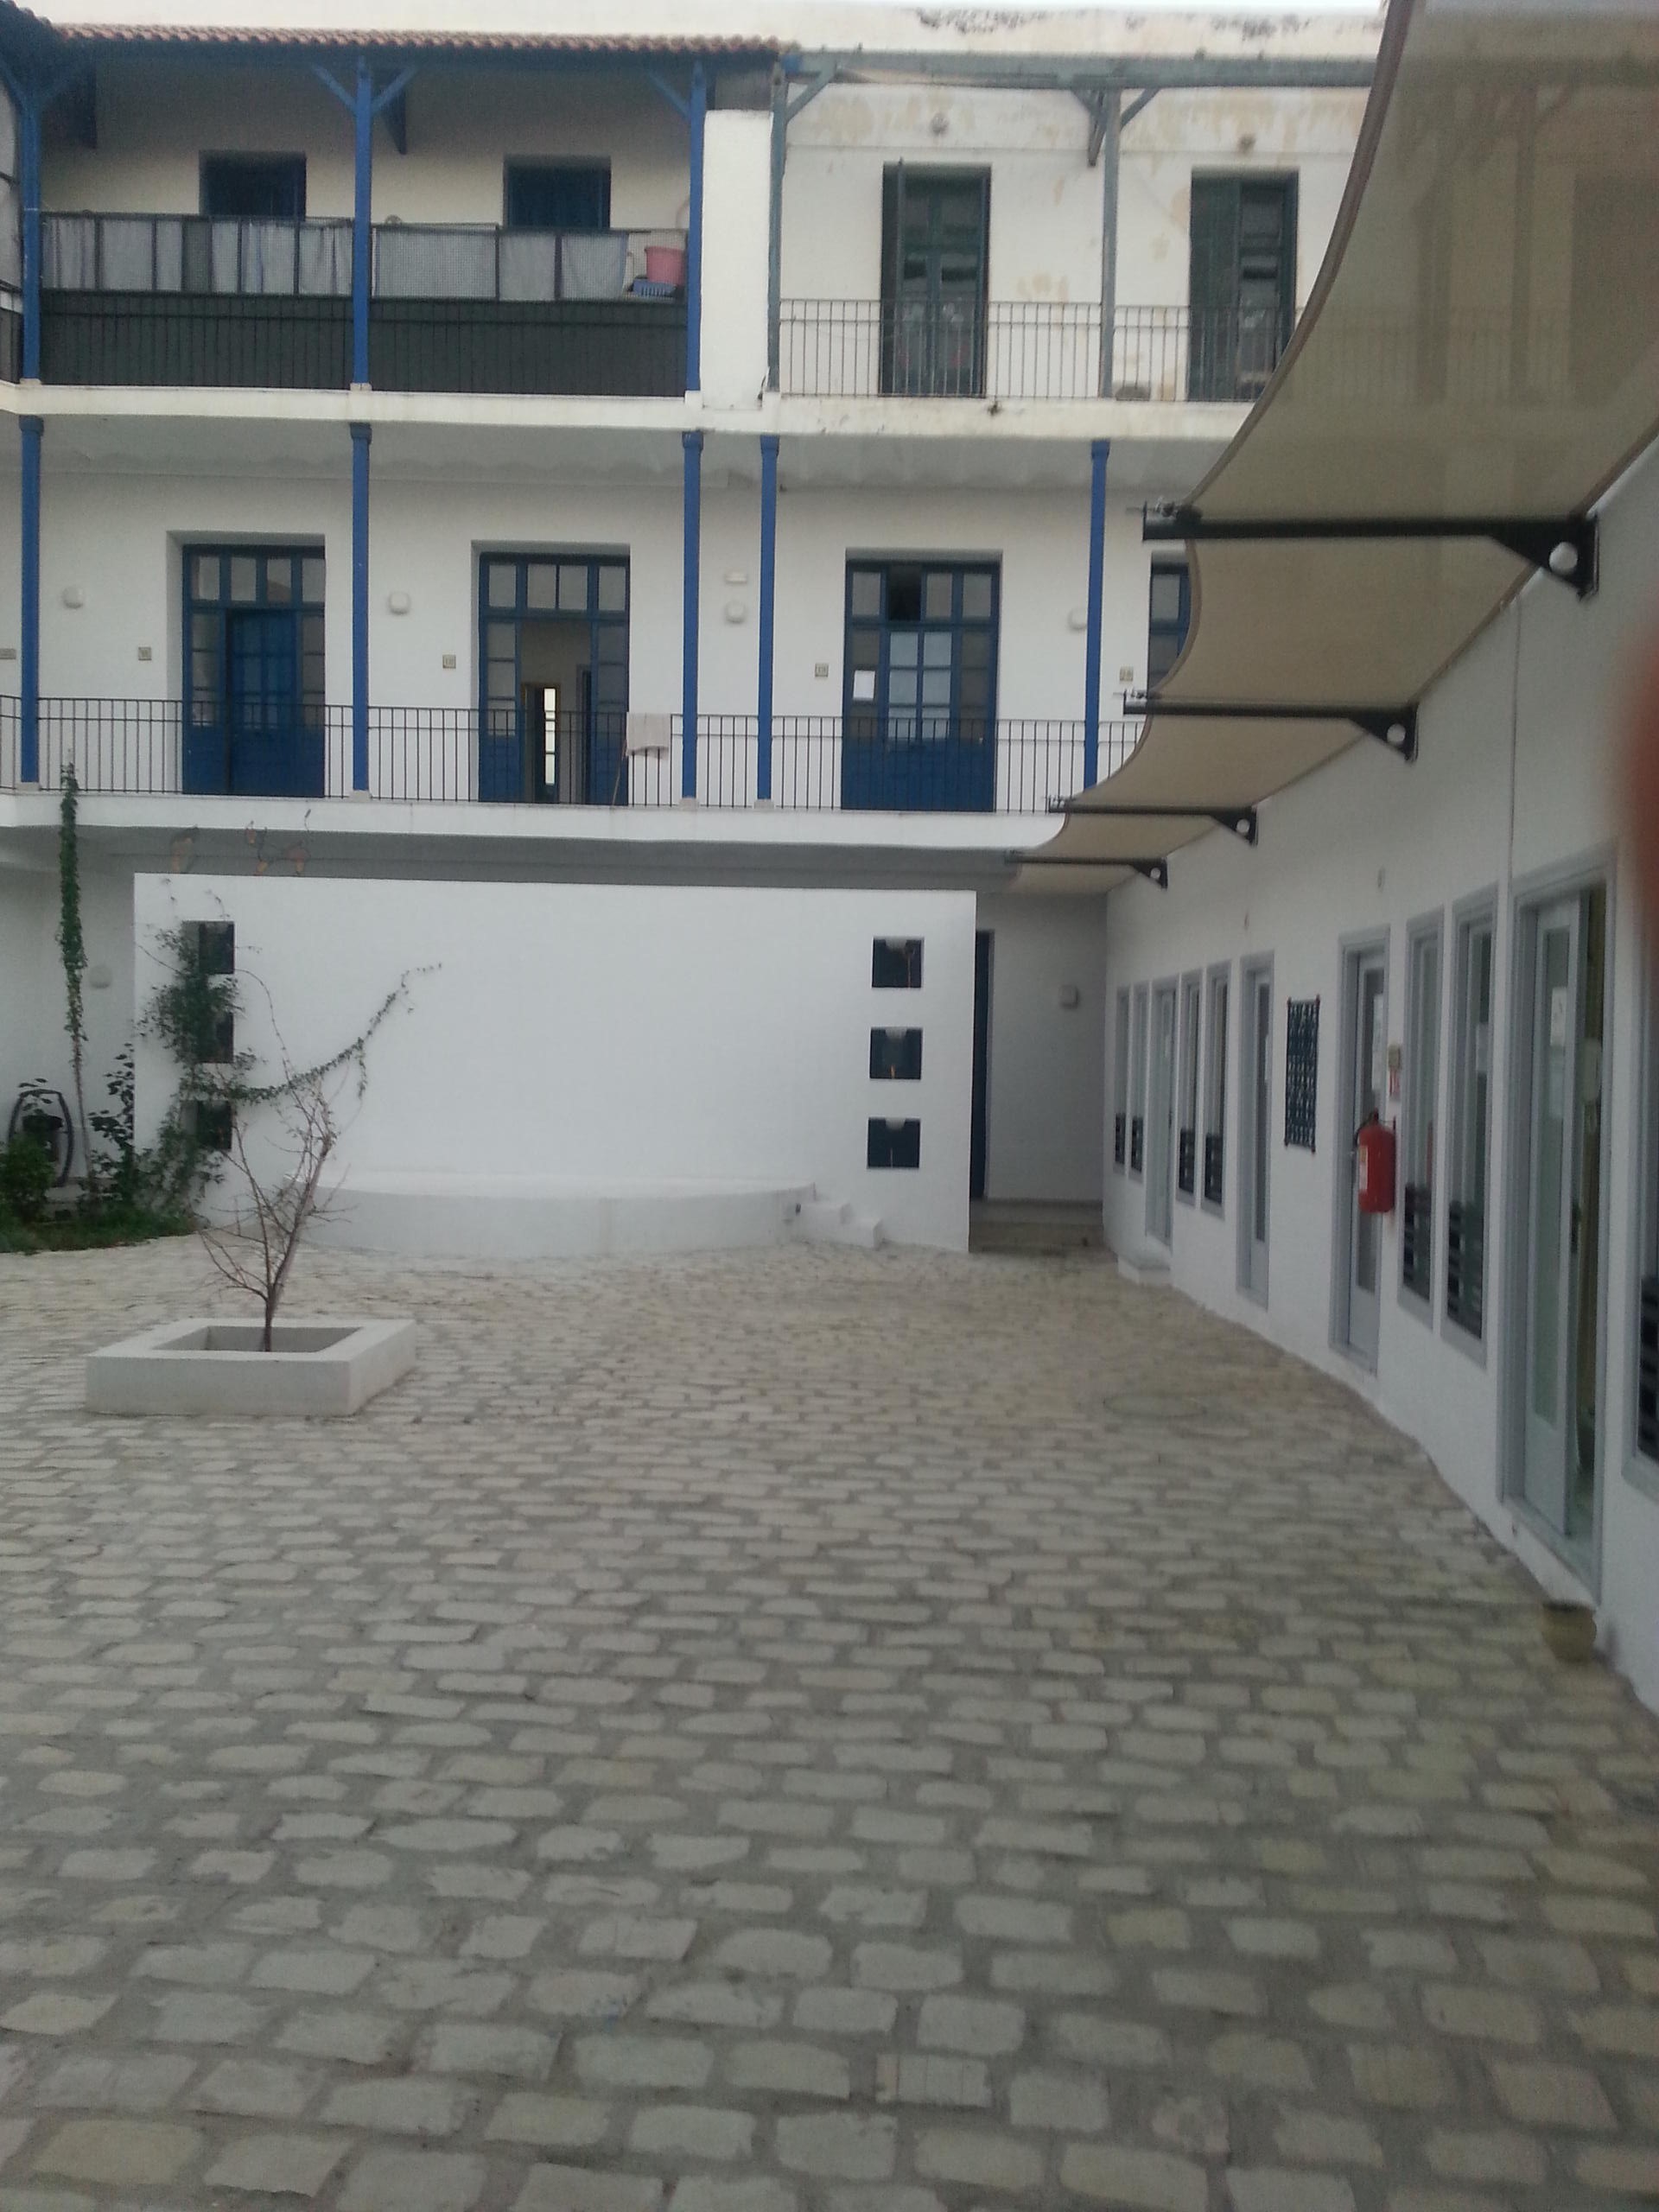 فناء مدرسة عتيقة تحولت إلى مركز لإيواء النساء المعنفات في مدينة تونس